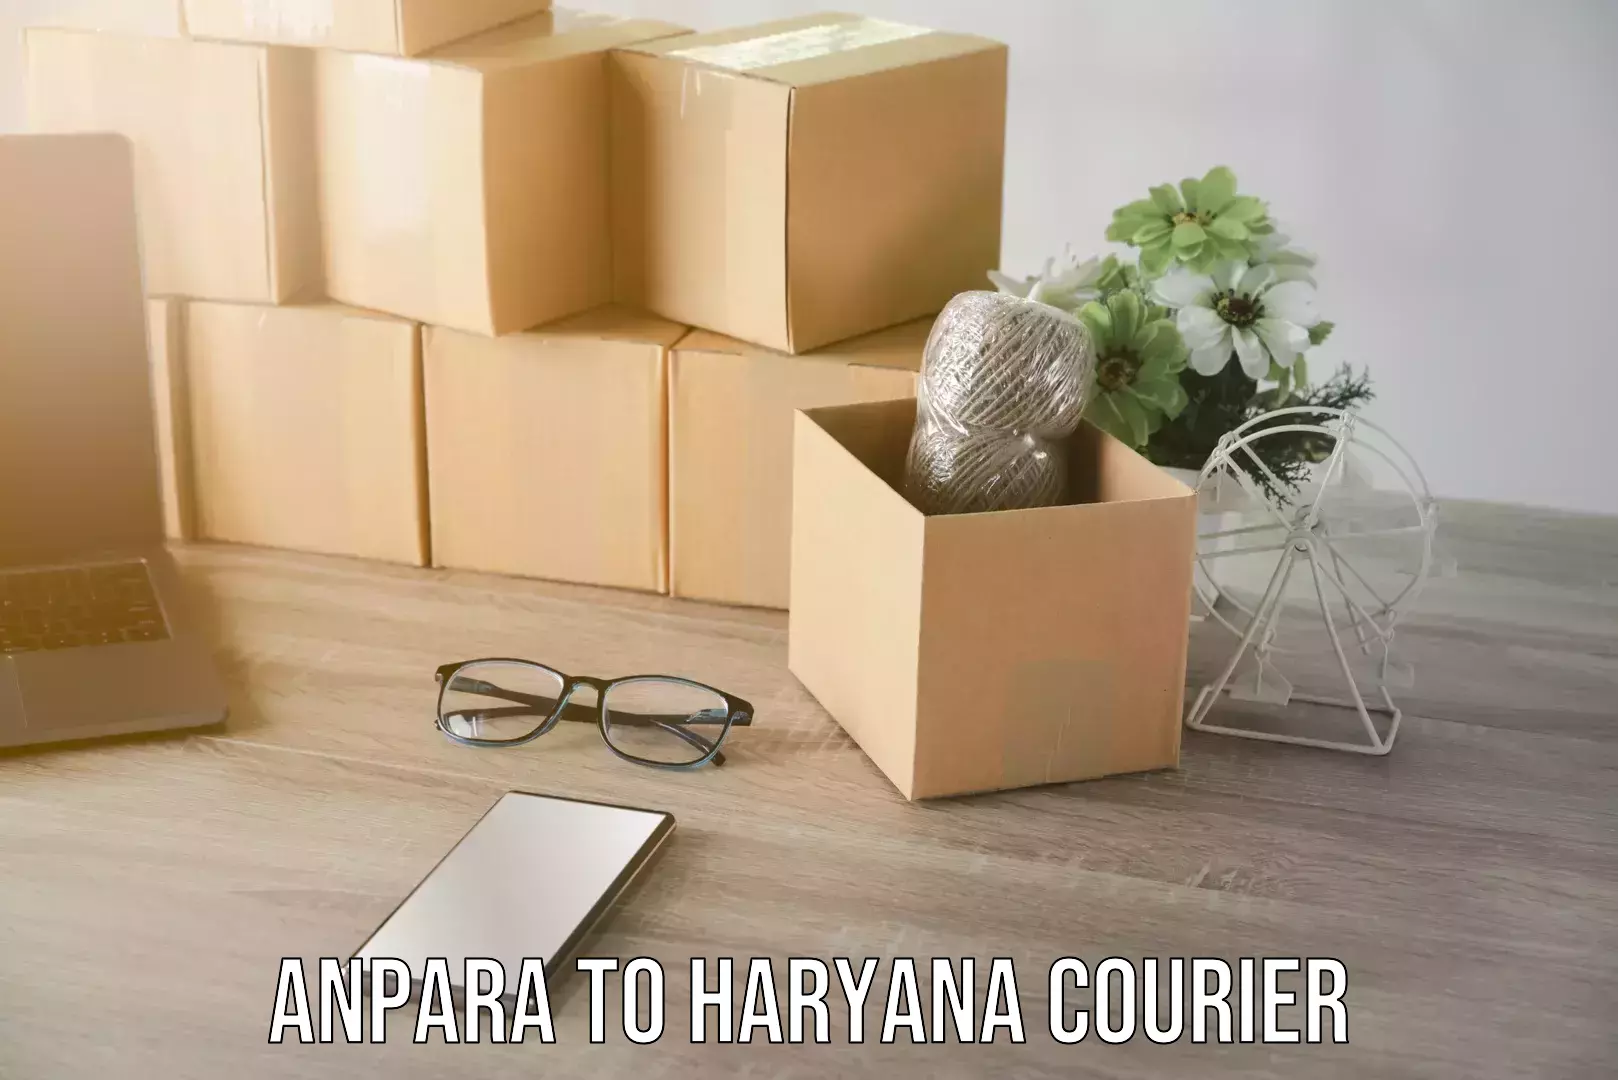 Enhanced tracking features Anpara to Haryana